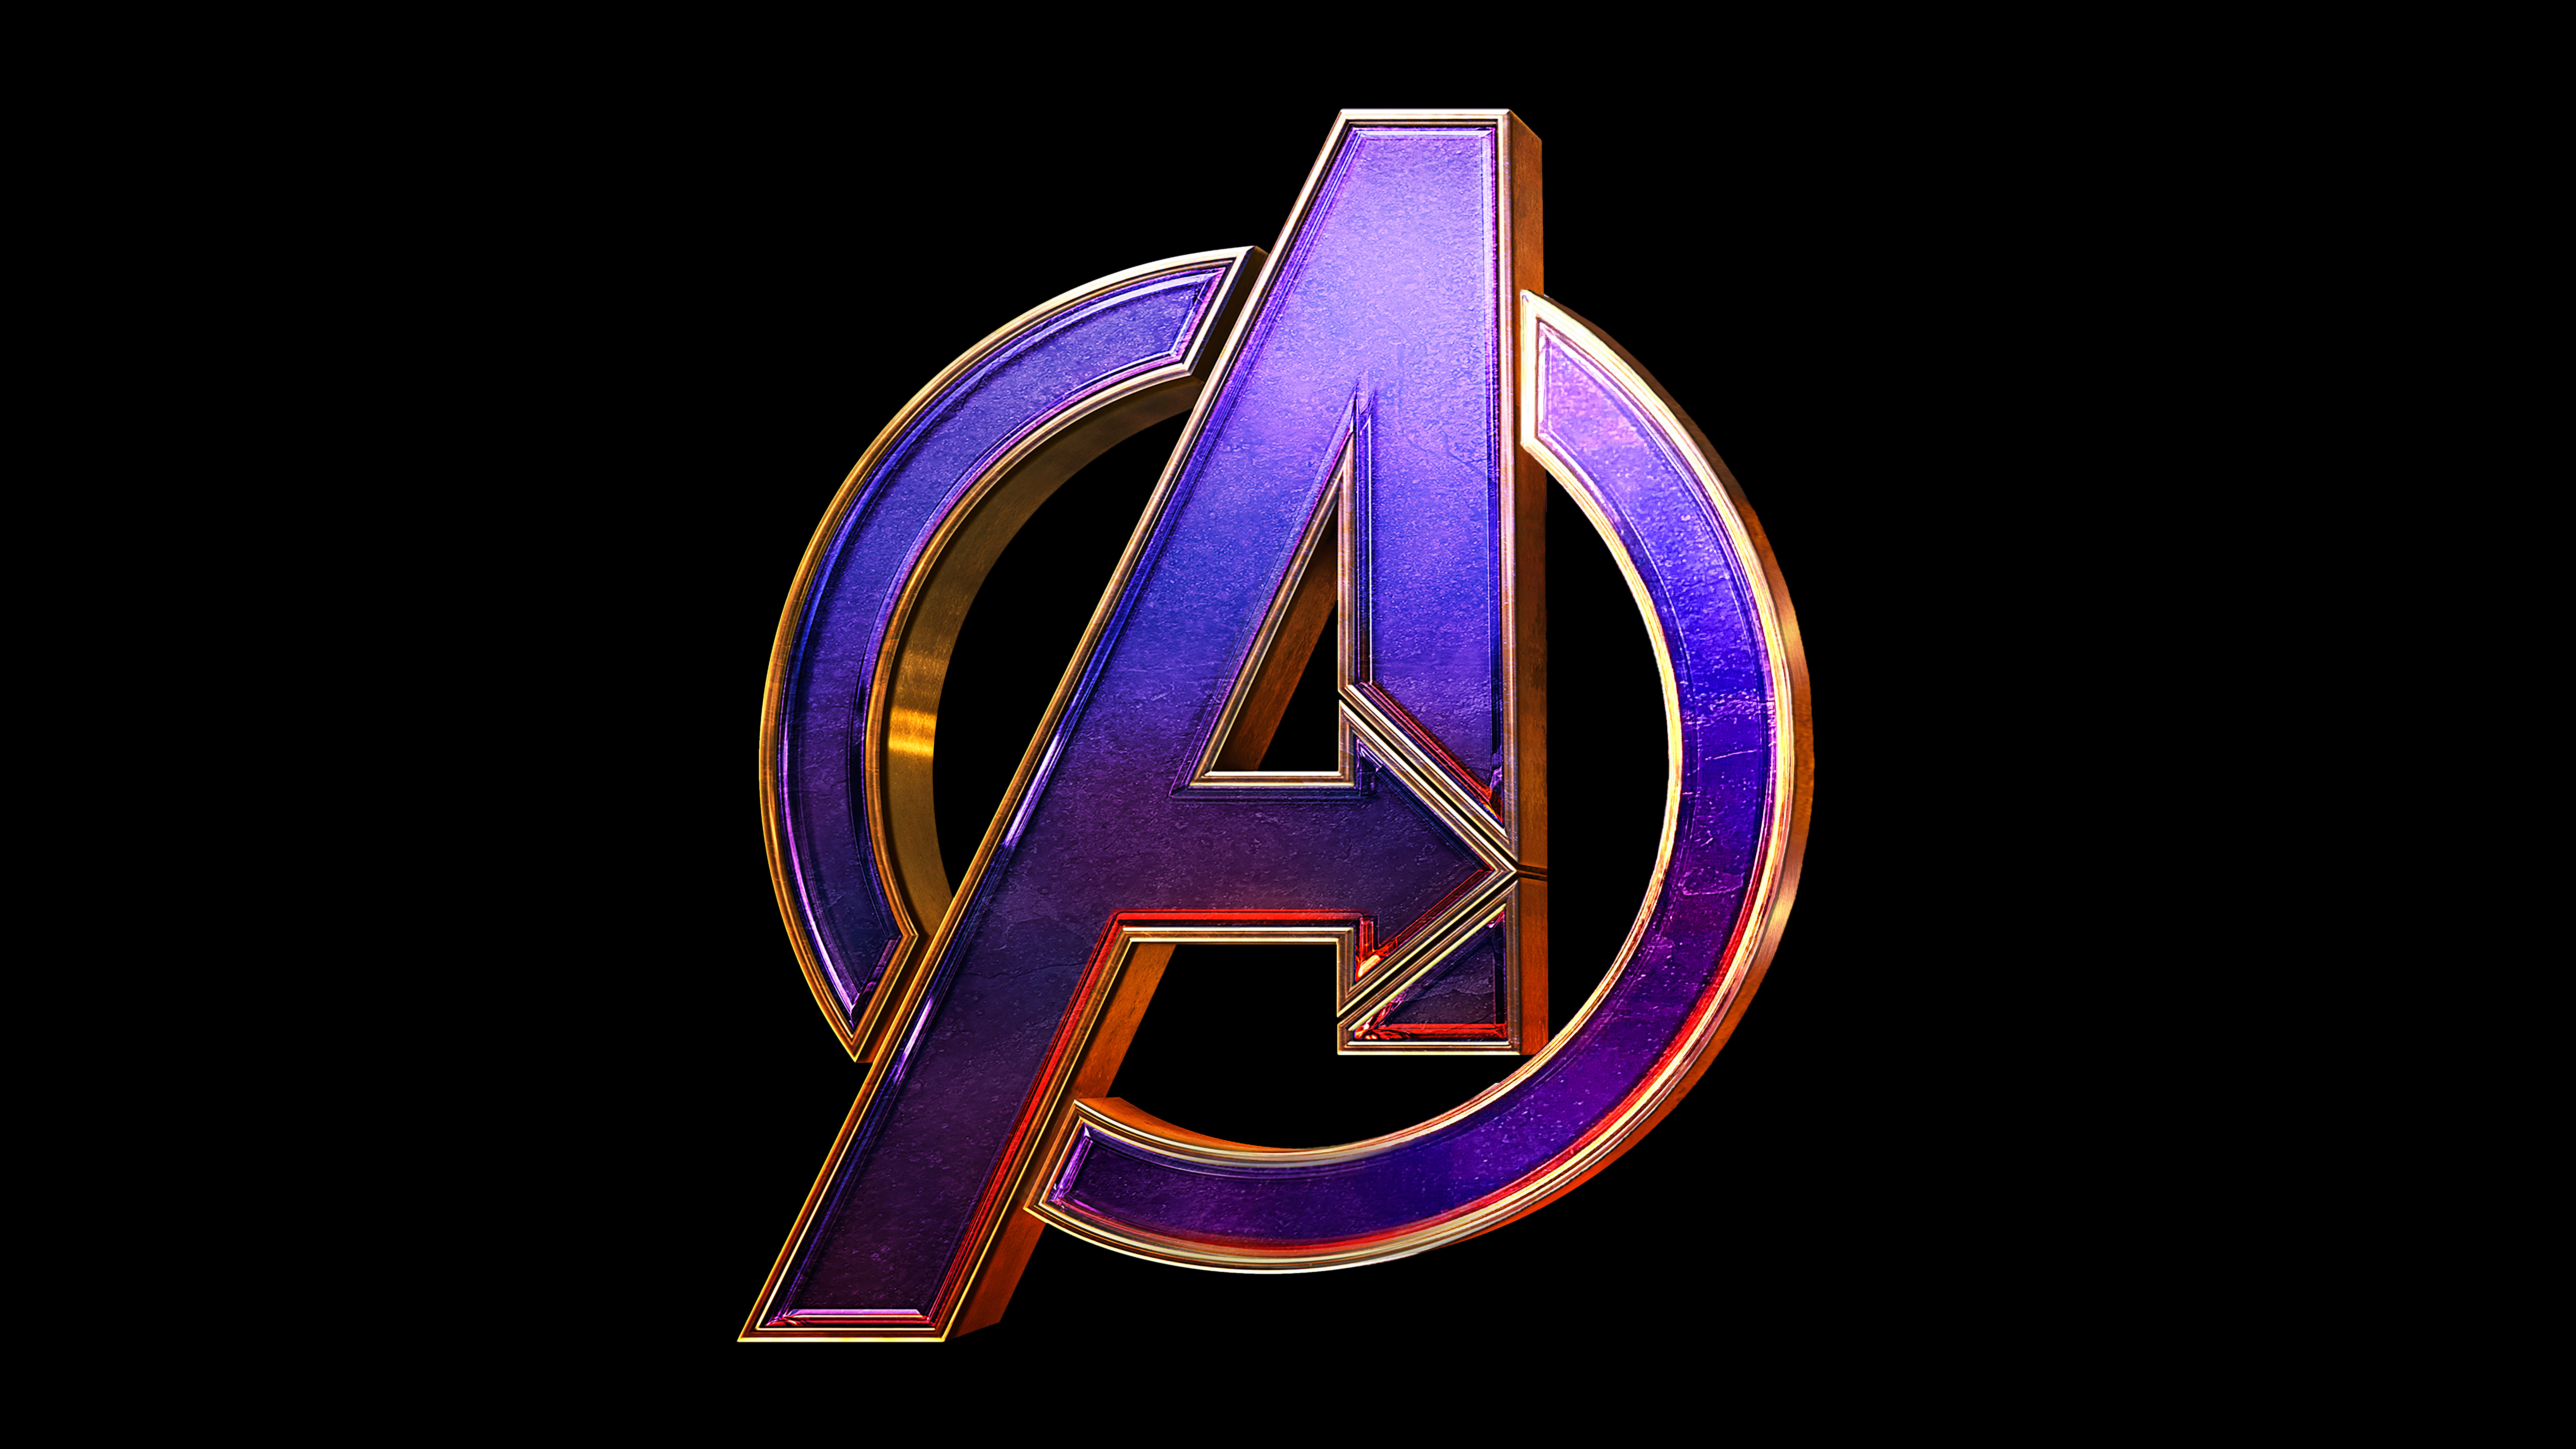 Avengers Endgame Logo Wallpapers